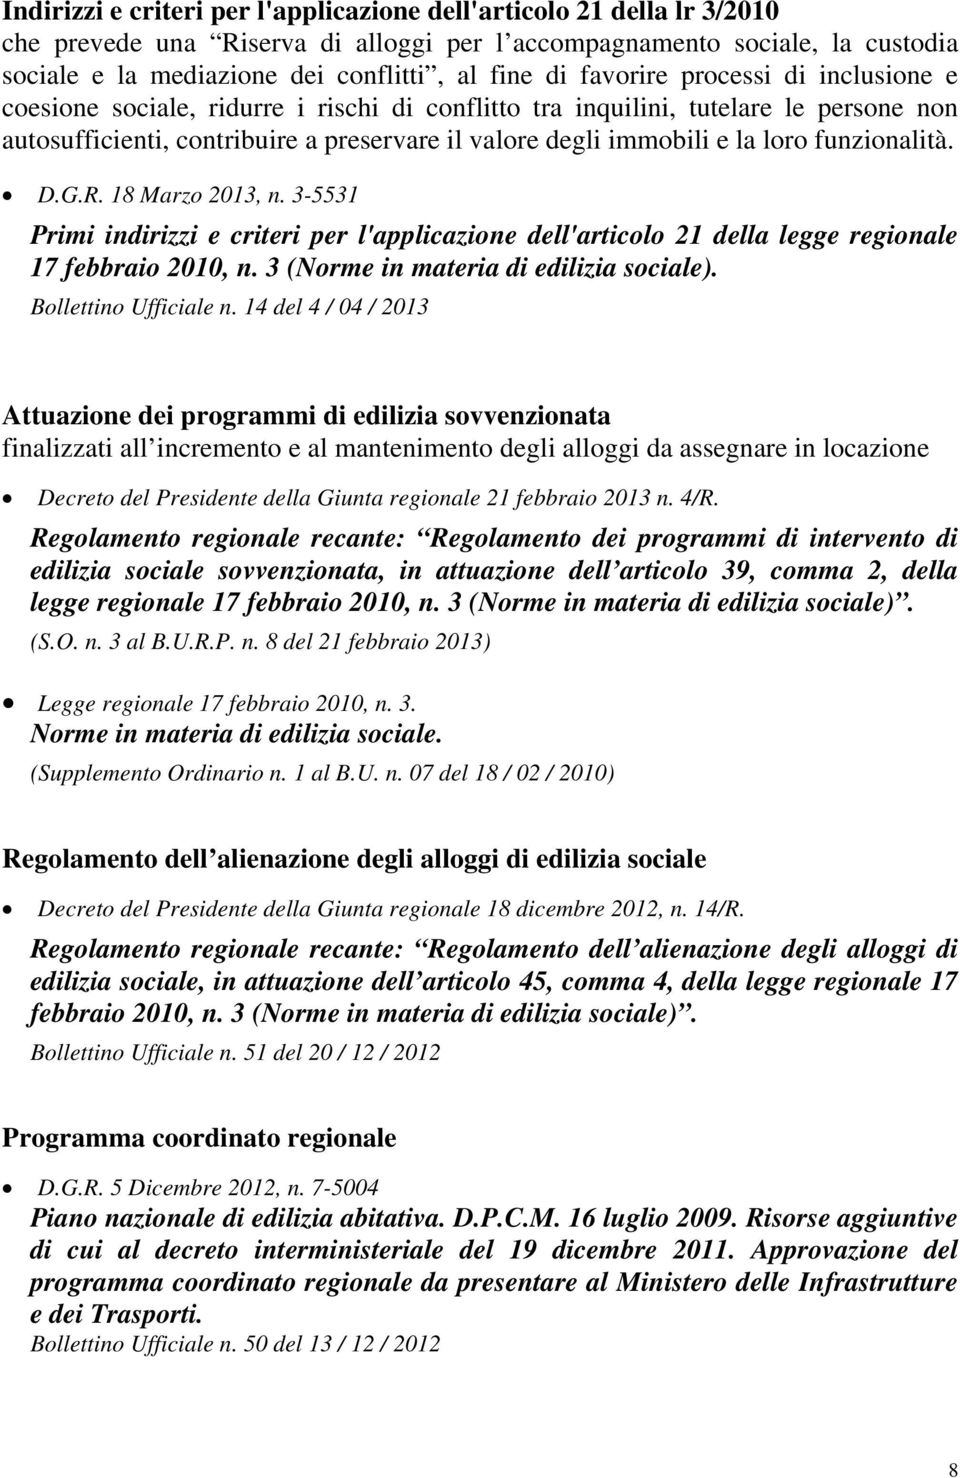 funzionalità. D.G.R. 18 Marzo 2013, n. 3-5531 Primi indirizzi e criteri per l'applicazione dell'articolo 21 della legge regionale 17 febbraio 2010, n. 3 (Norme in materia di edilizia sociale).